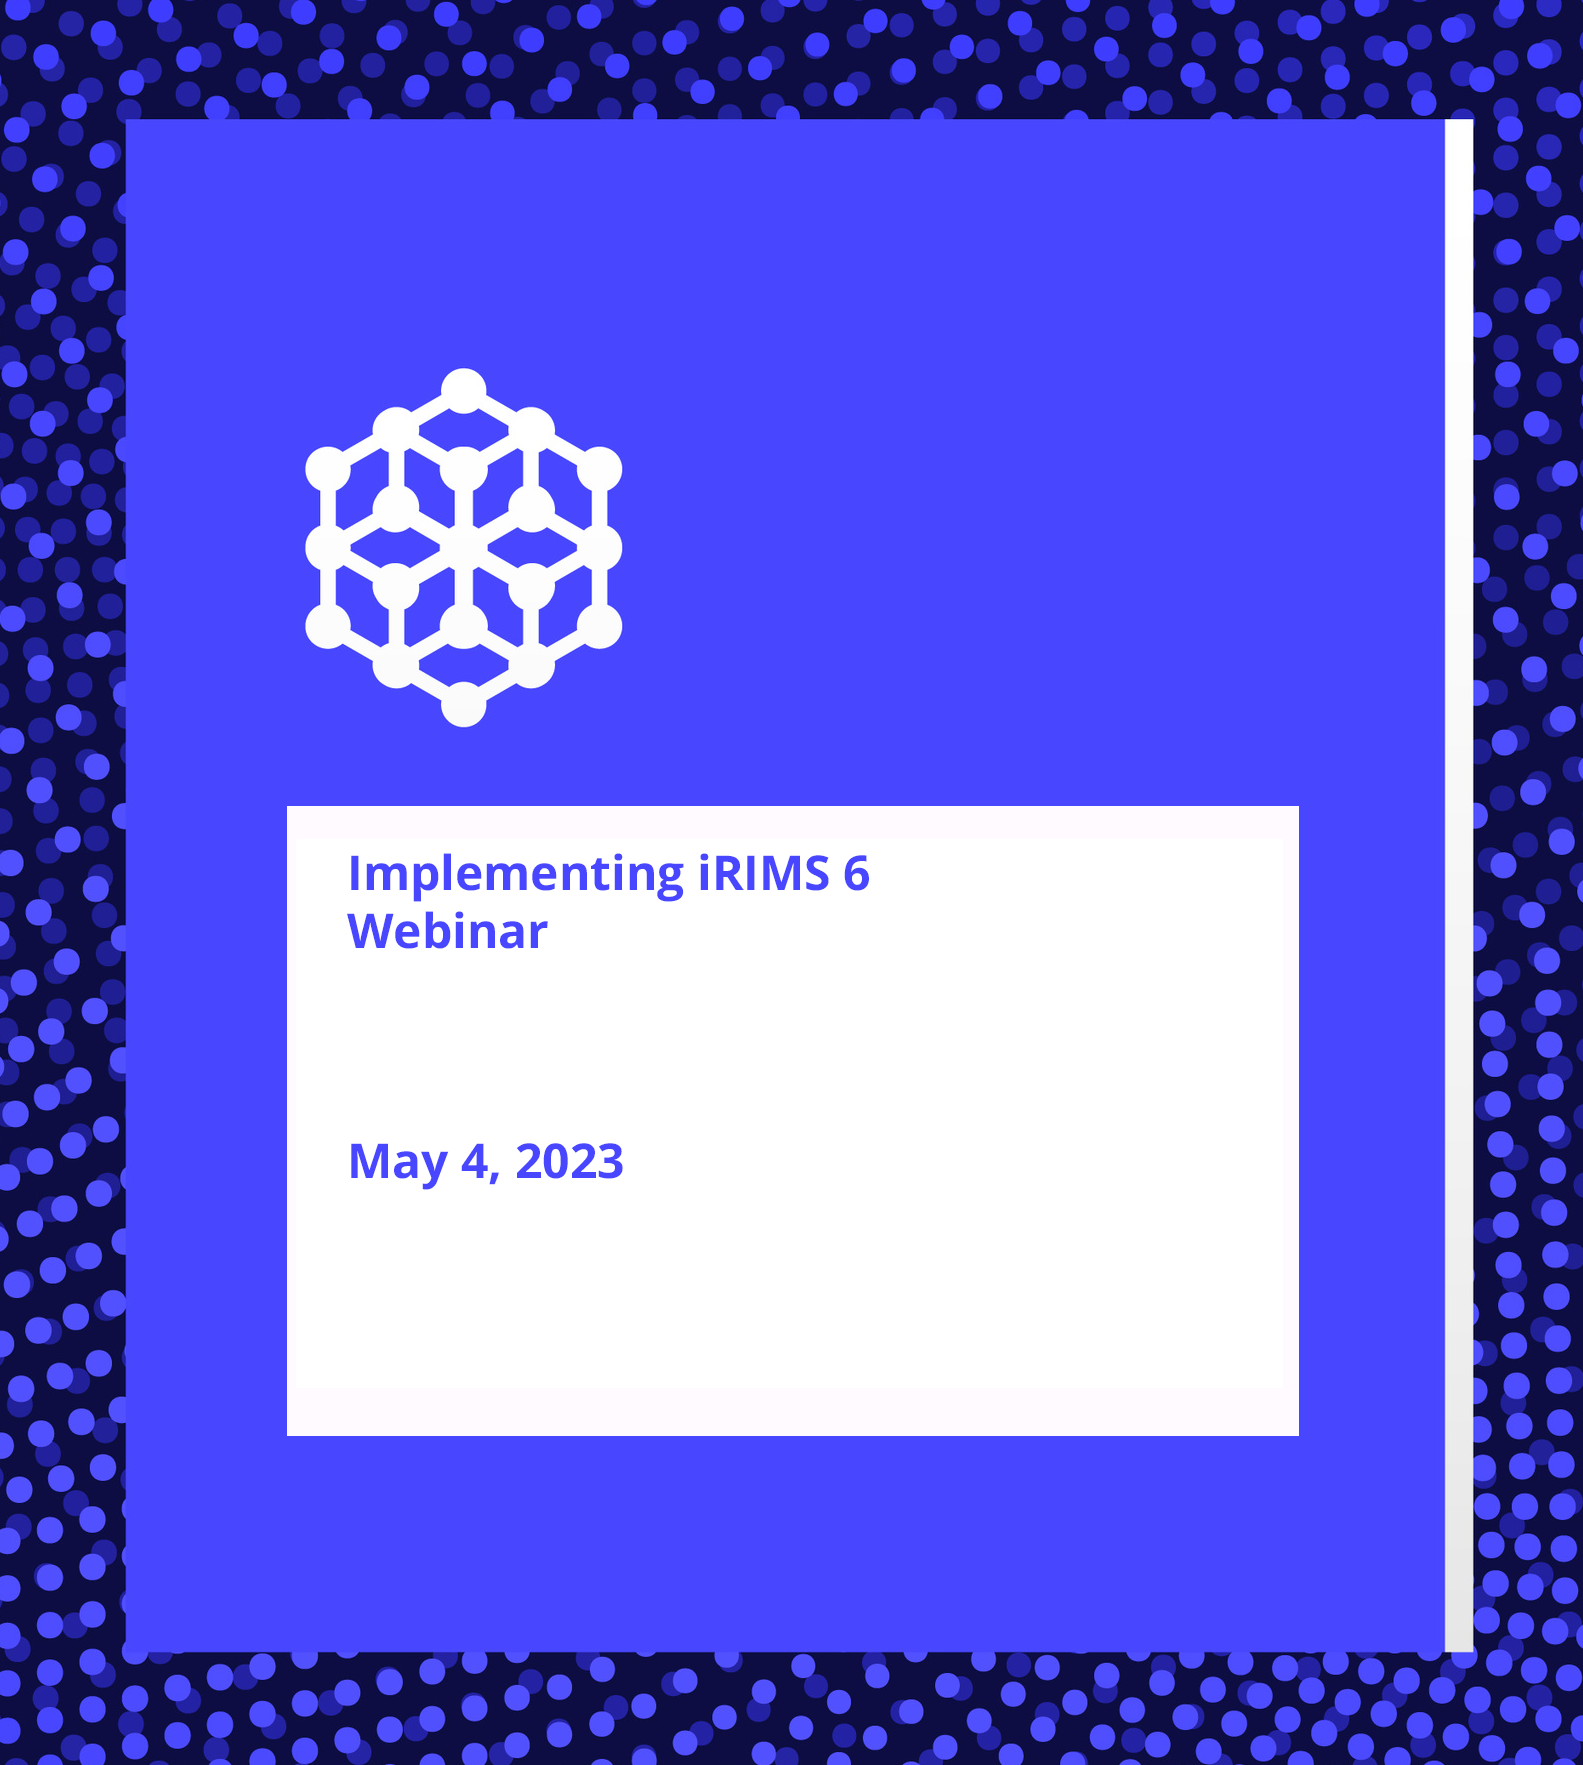 Implementing iRIMS 6 Webinar (May 4, 2023)